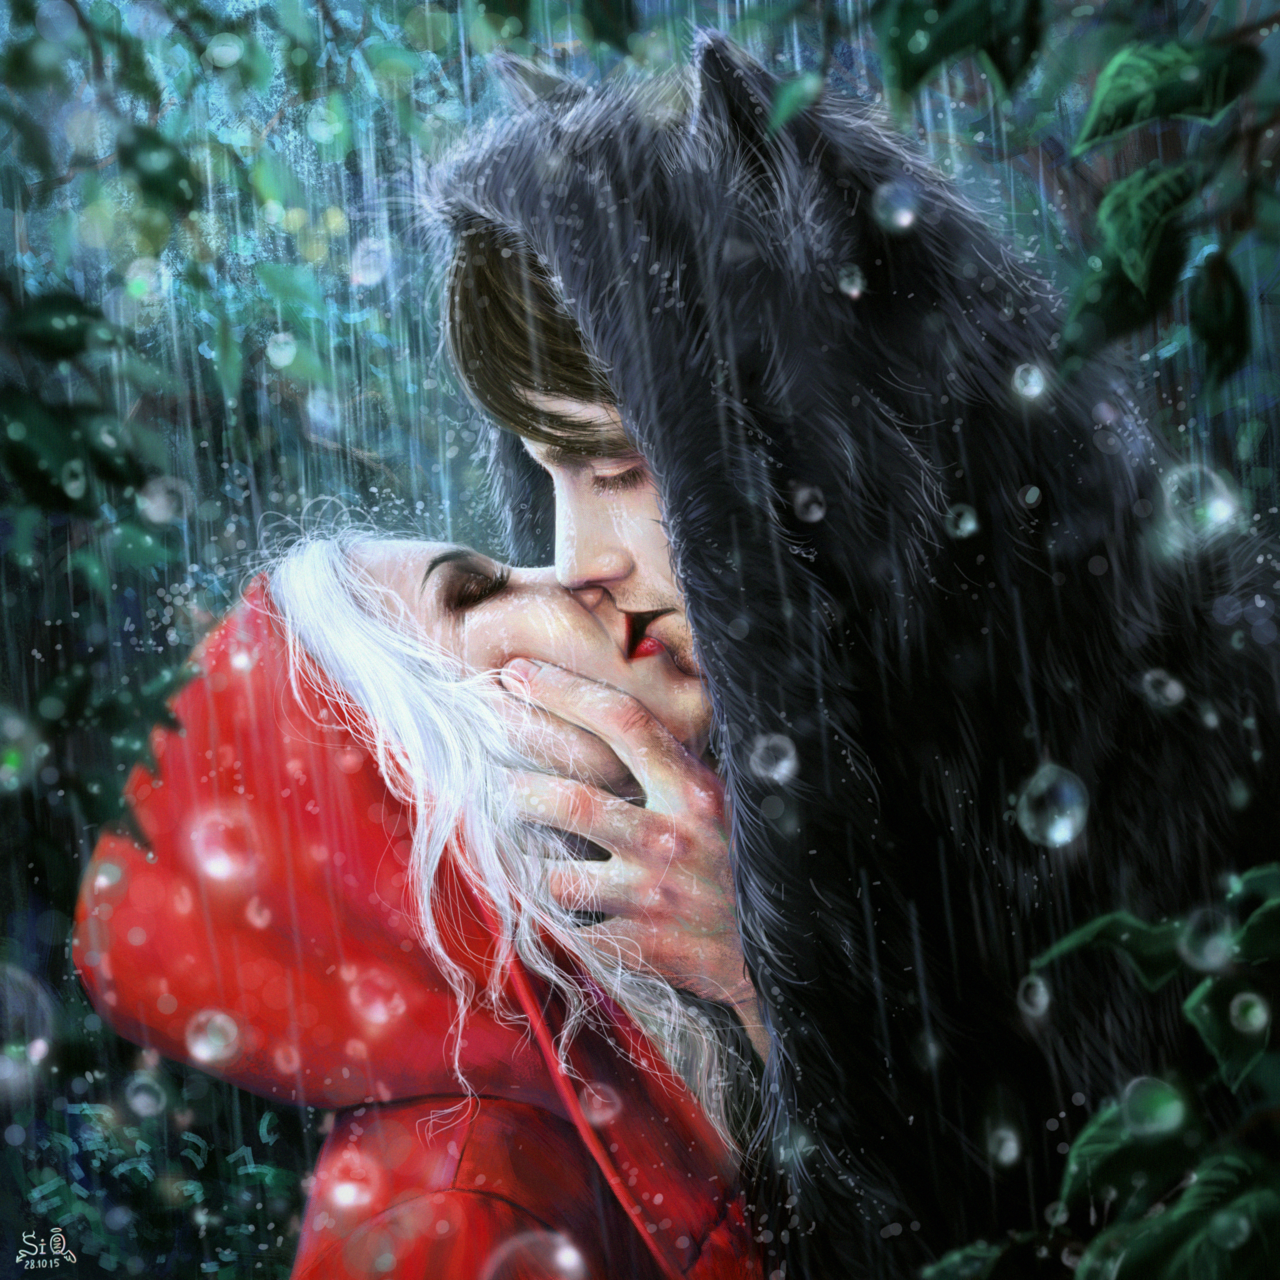 Фото Девушка в красном плаще и парень в волчьей шкуре целуются, by Fuytski